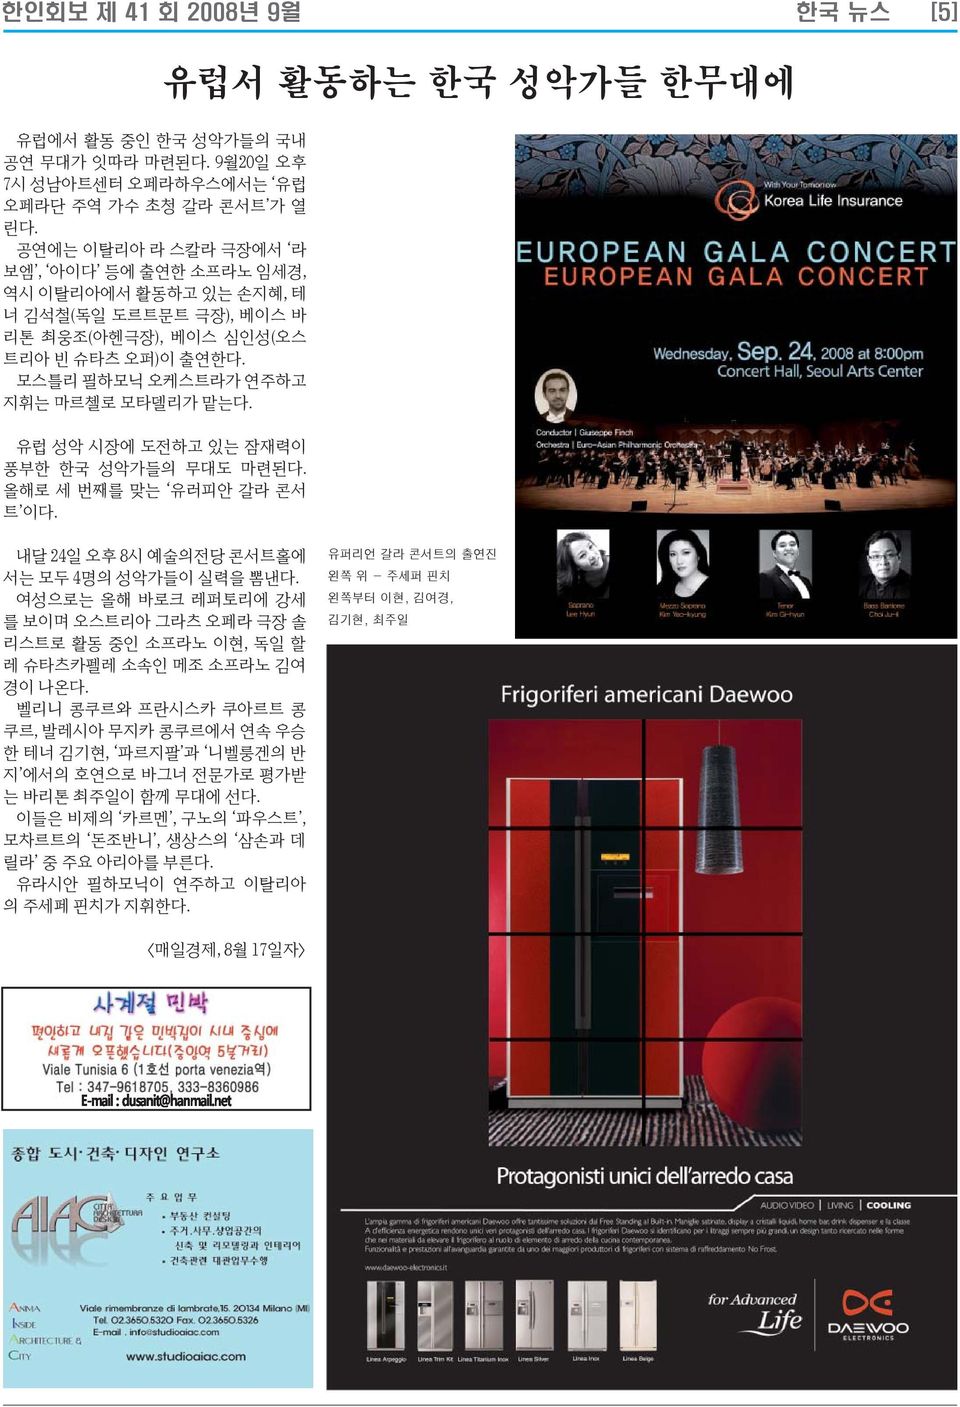 유럽 성악 시장에 도전하고 있는 잠재력이 풍부한 한국 성악가들의 무대도 마련된다. 올해로 세 번째를 맞는 유러피안 갈라 콘서 트 이다. 내달 24일 오후 8시 예술의전당 콘서트홀에 서는 모두 4명의 성악가들이 실력을 뽐낸다.